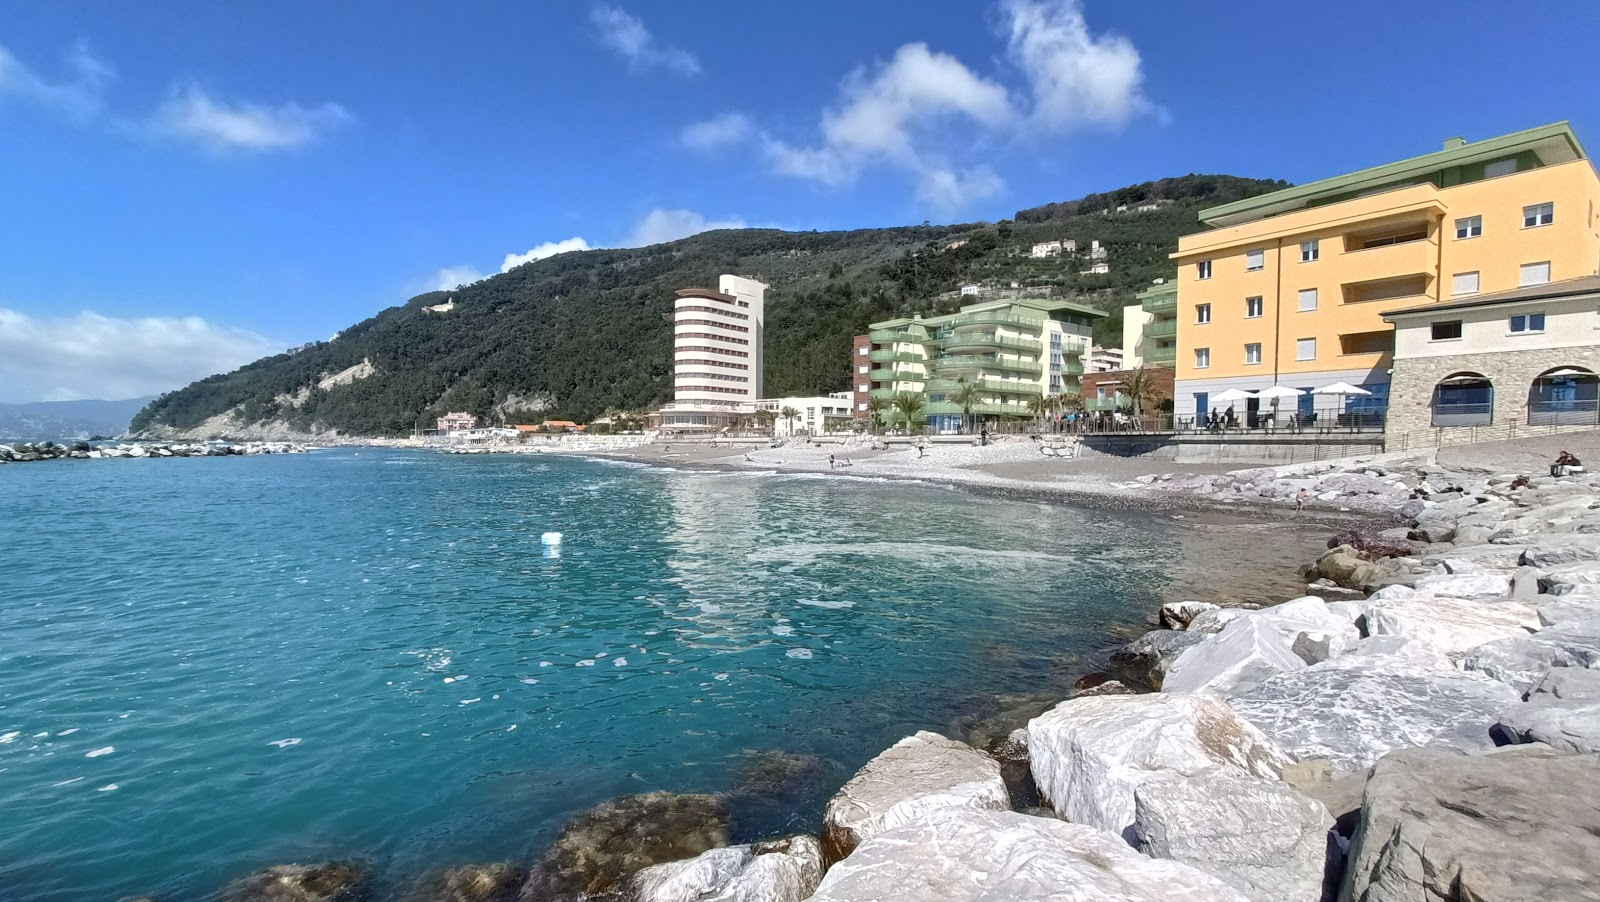 Photo of La spiaggia di Preli a Chiavari with spacious shore